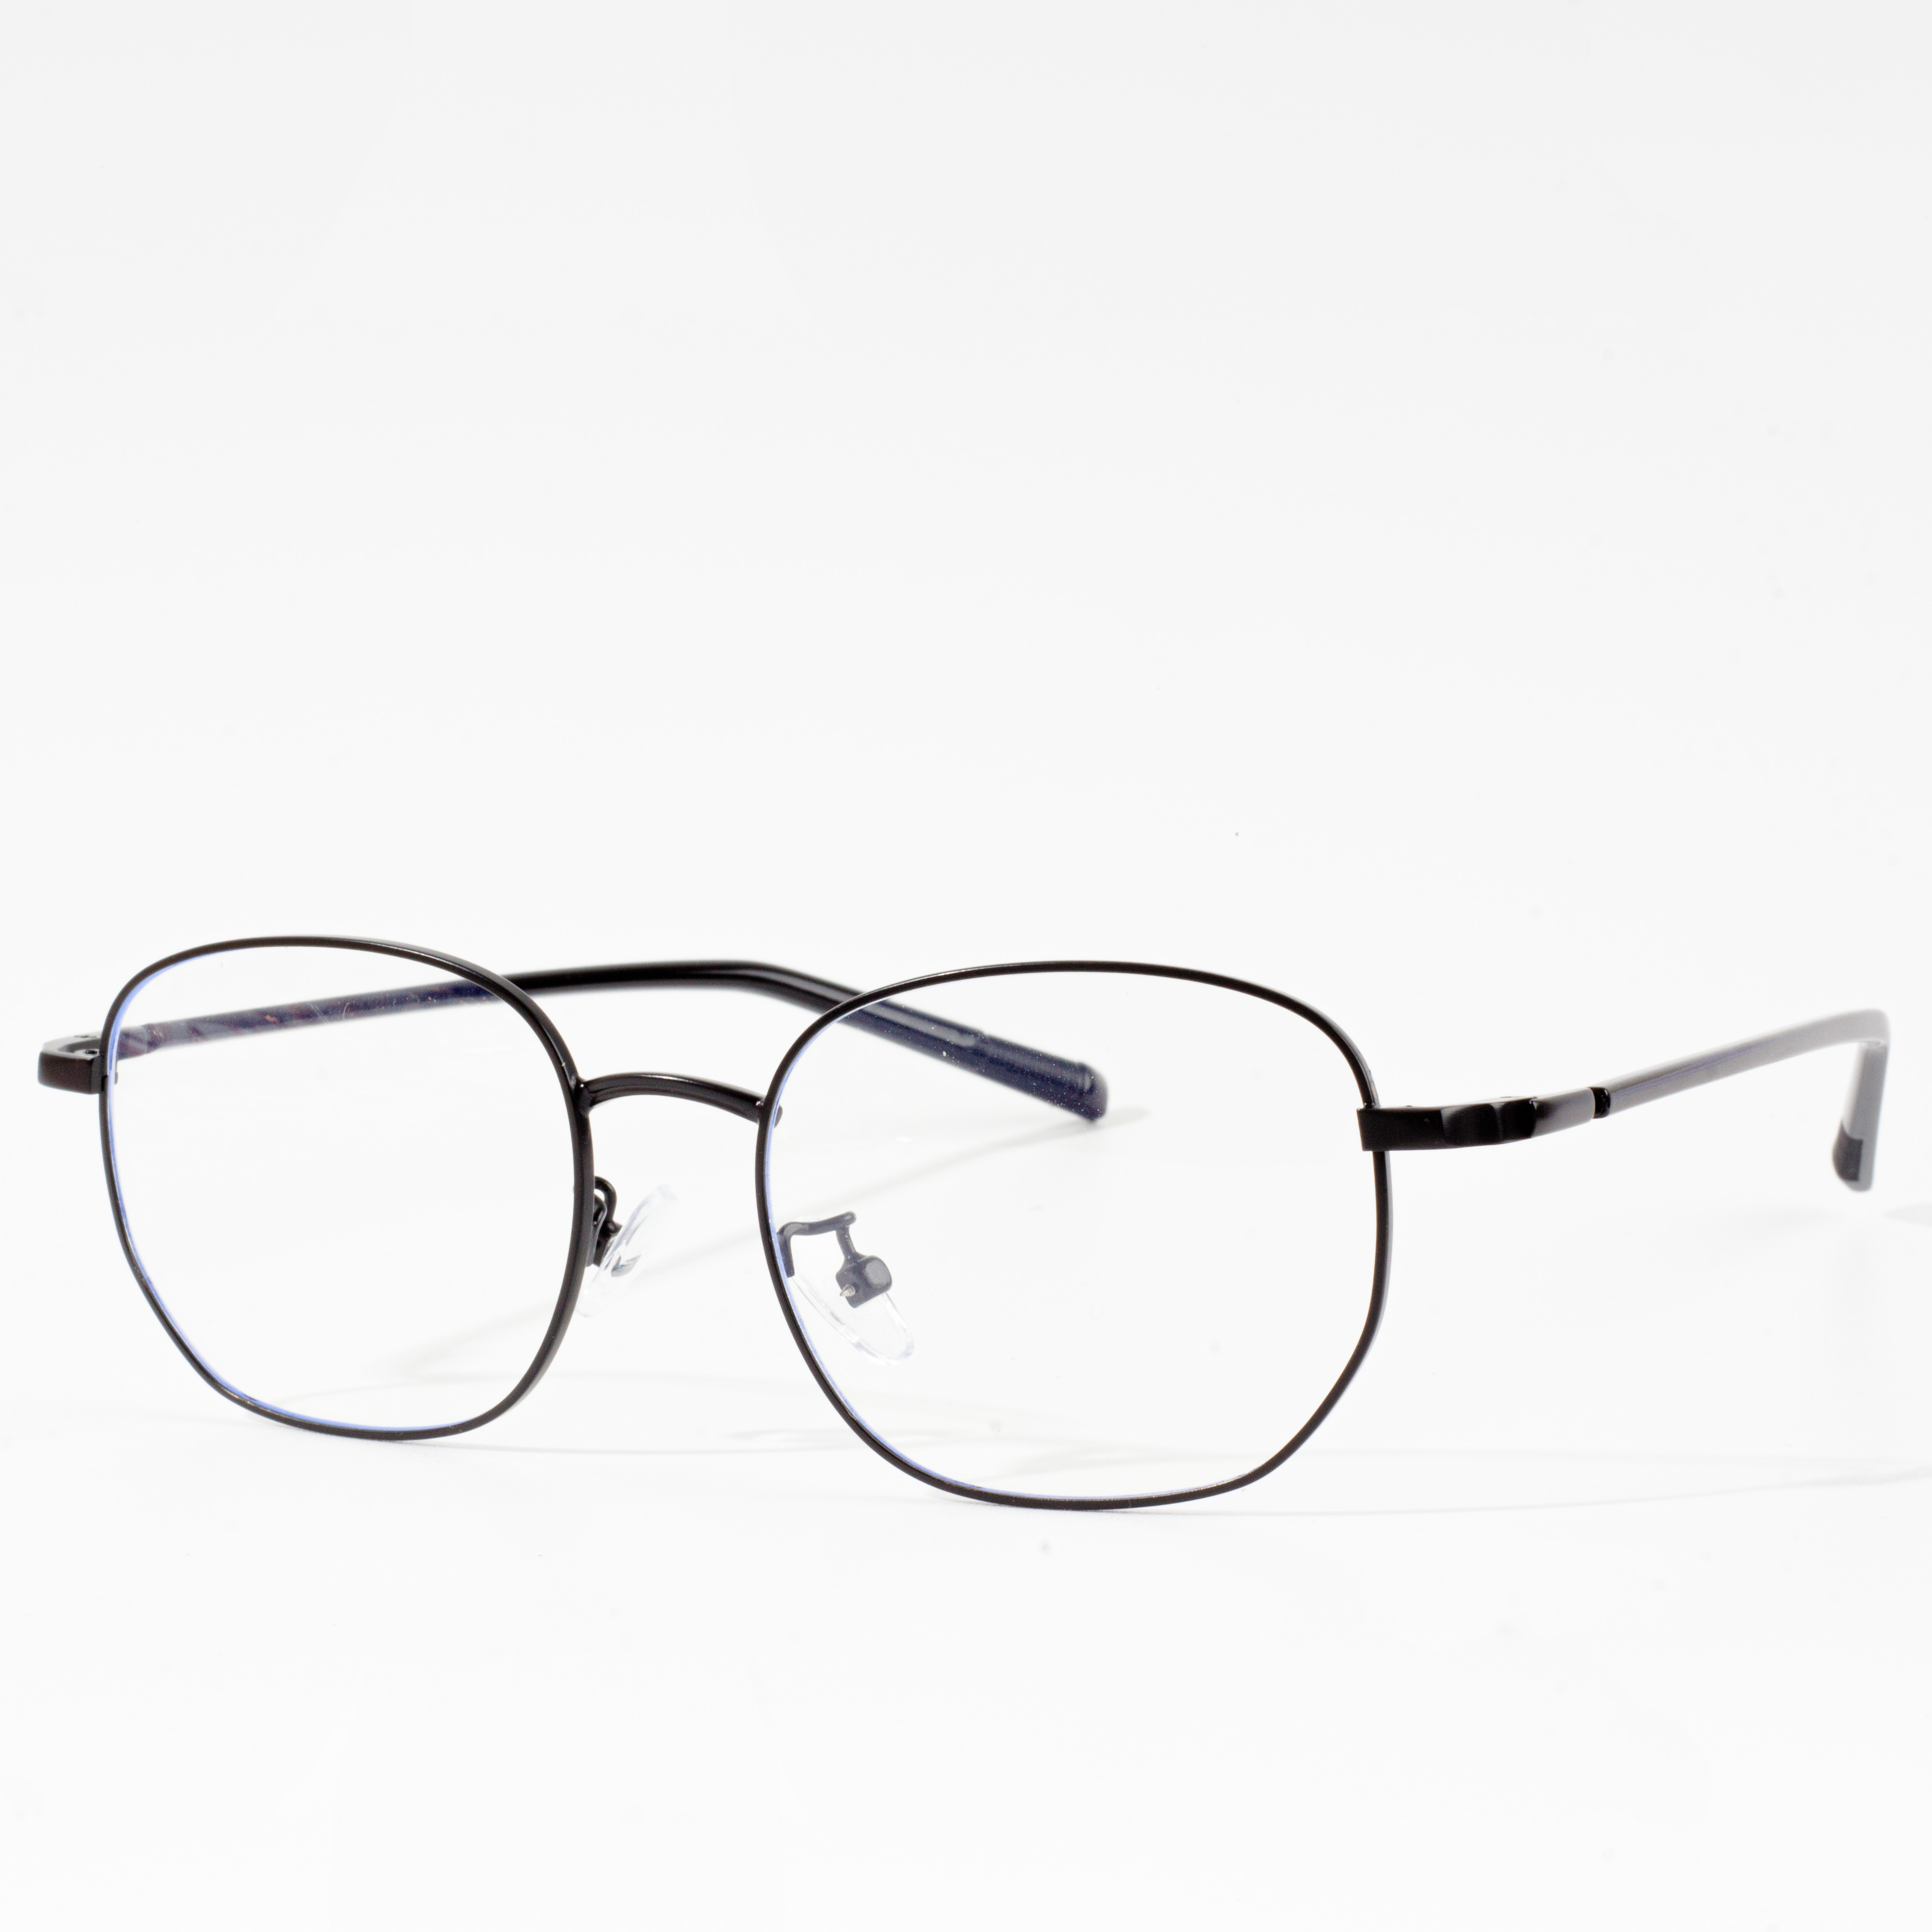 szemüvegkeretek típusai